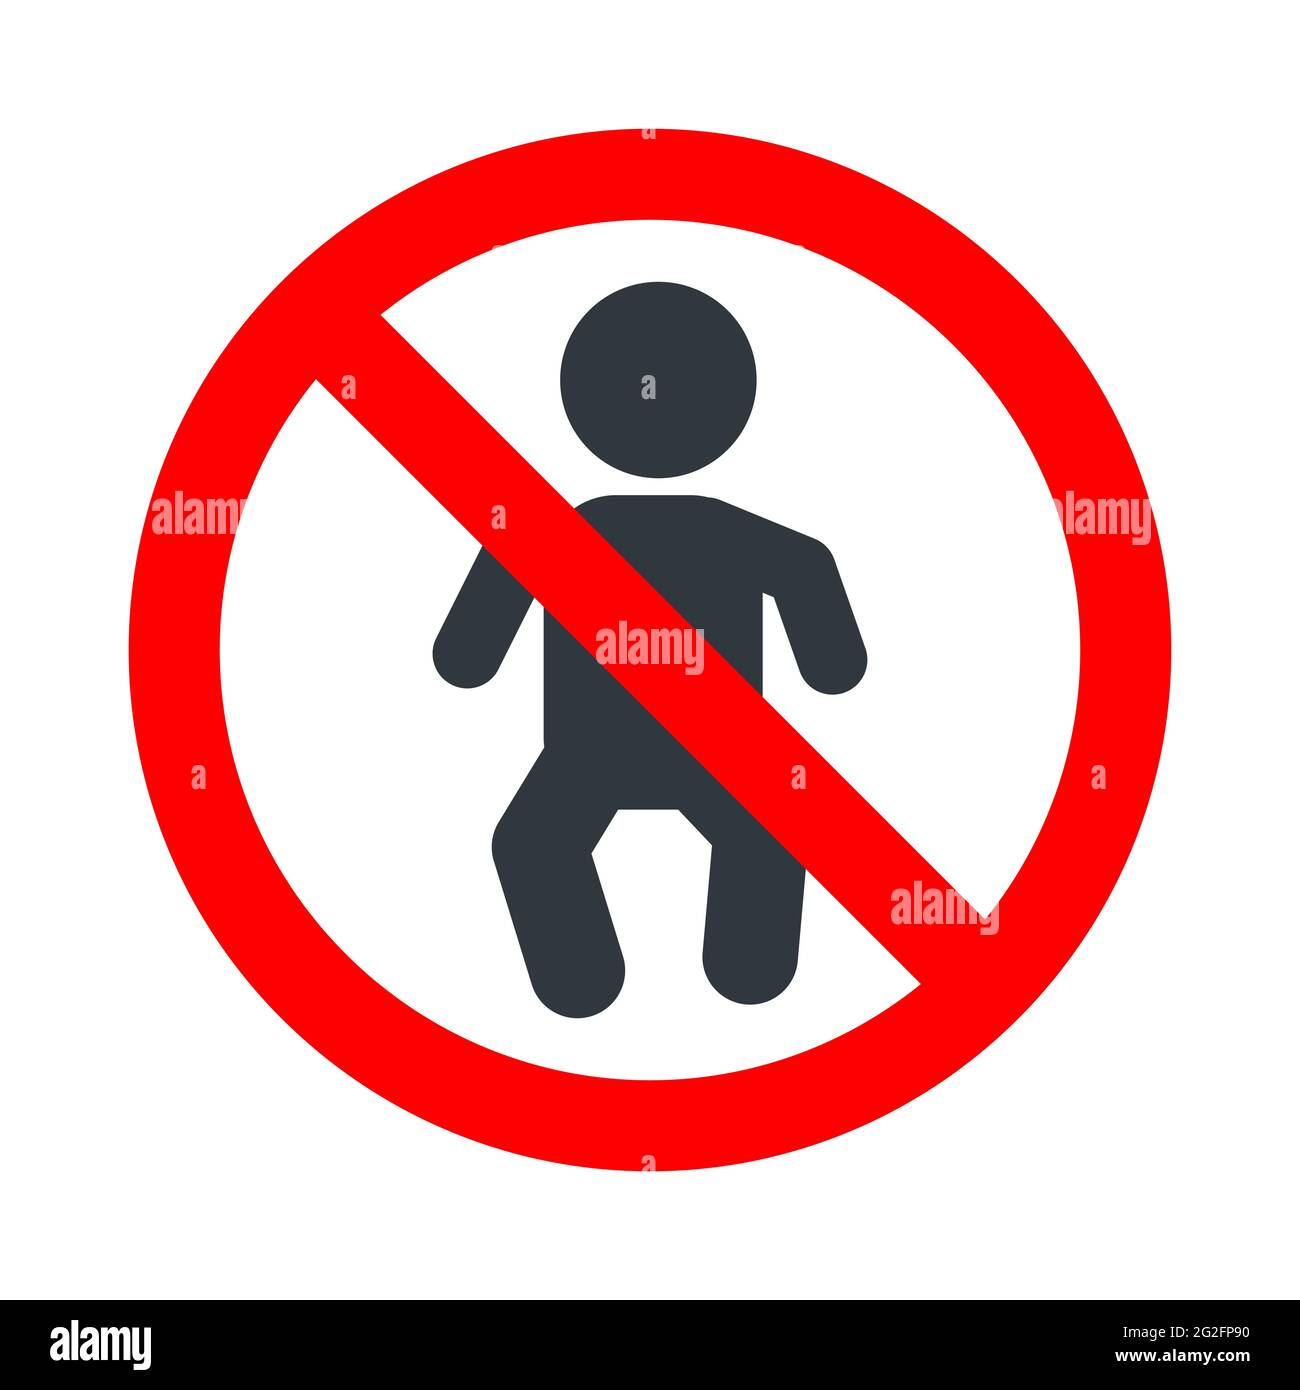 Bambini non ammessi, cartello rosso vietato con l'icona del bambino su sfondo bianco Illustrazione Vettoriale